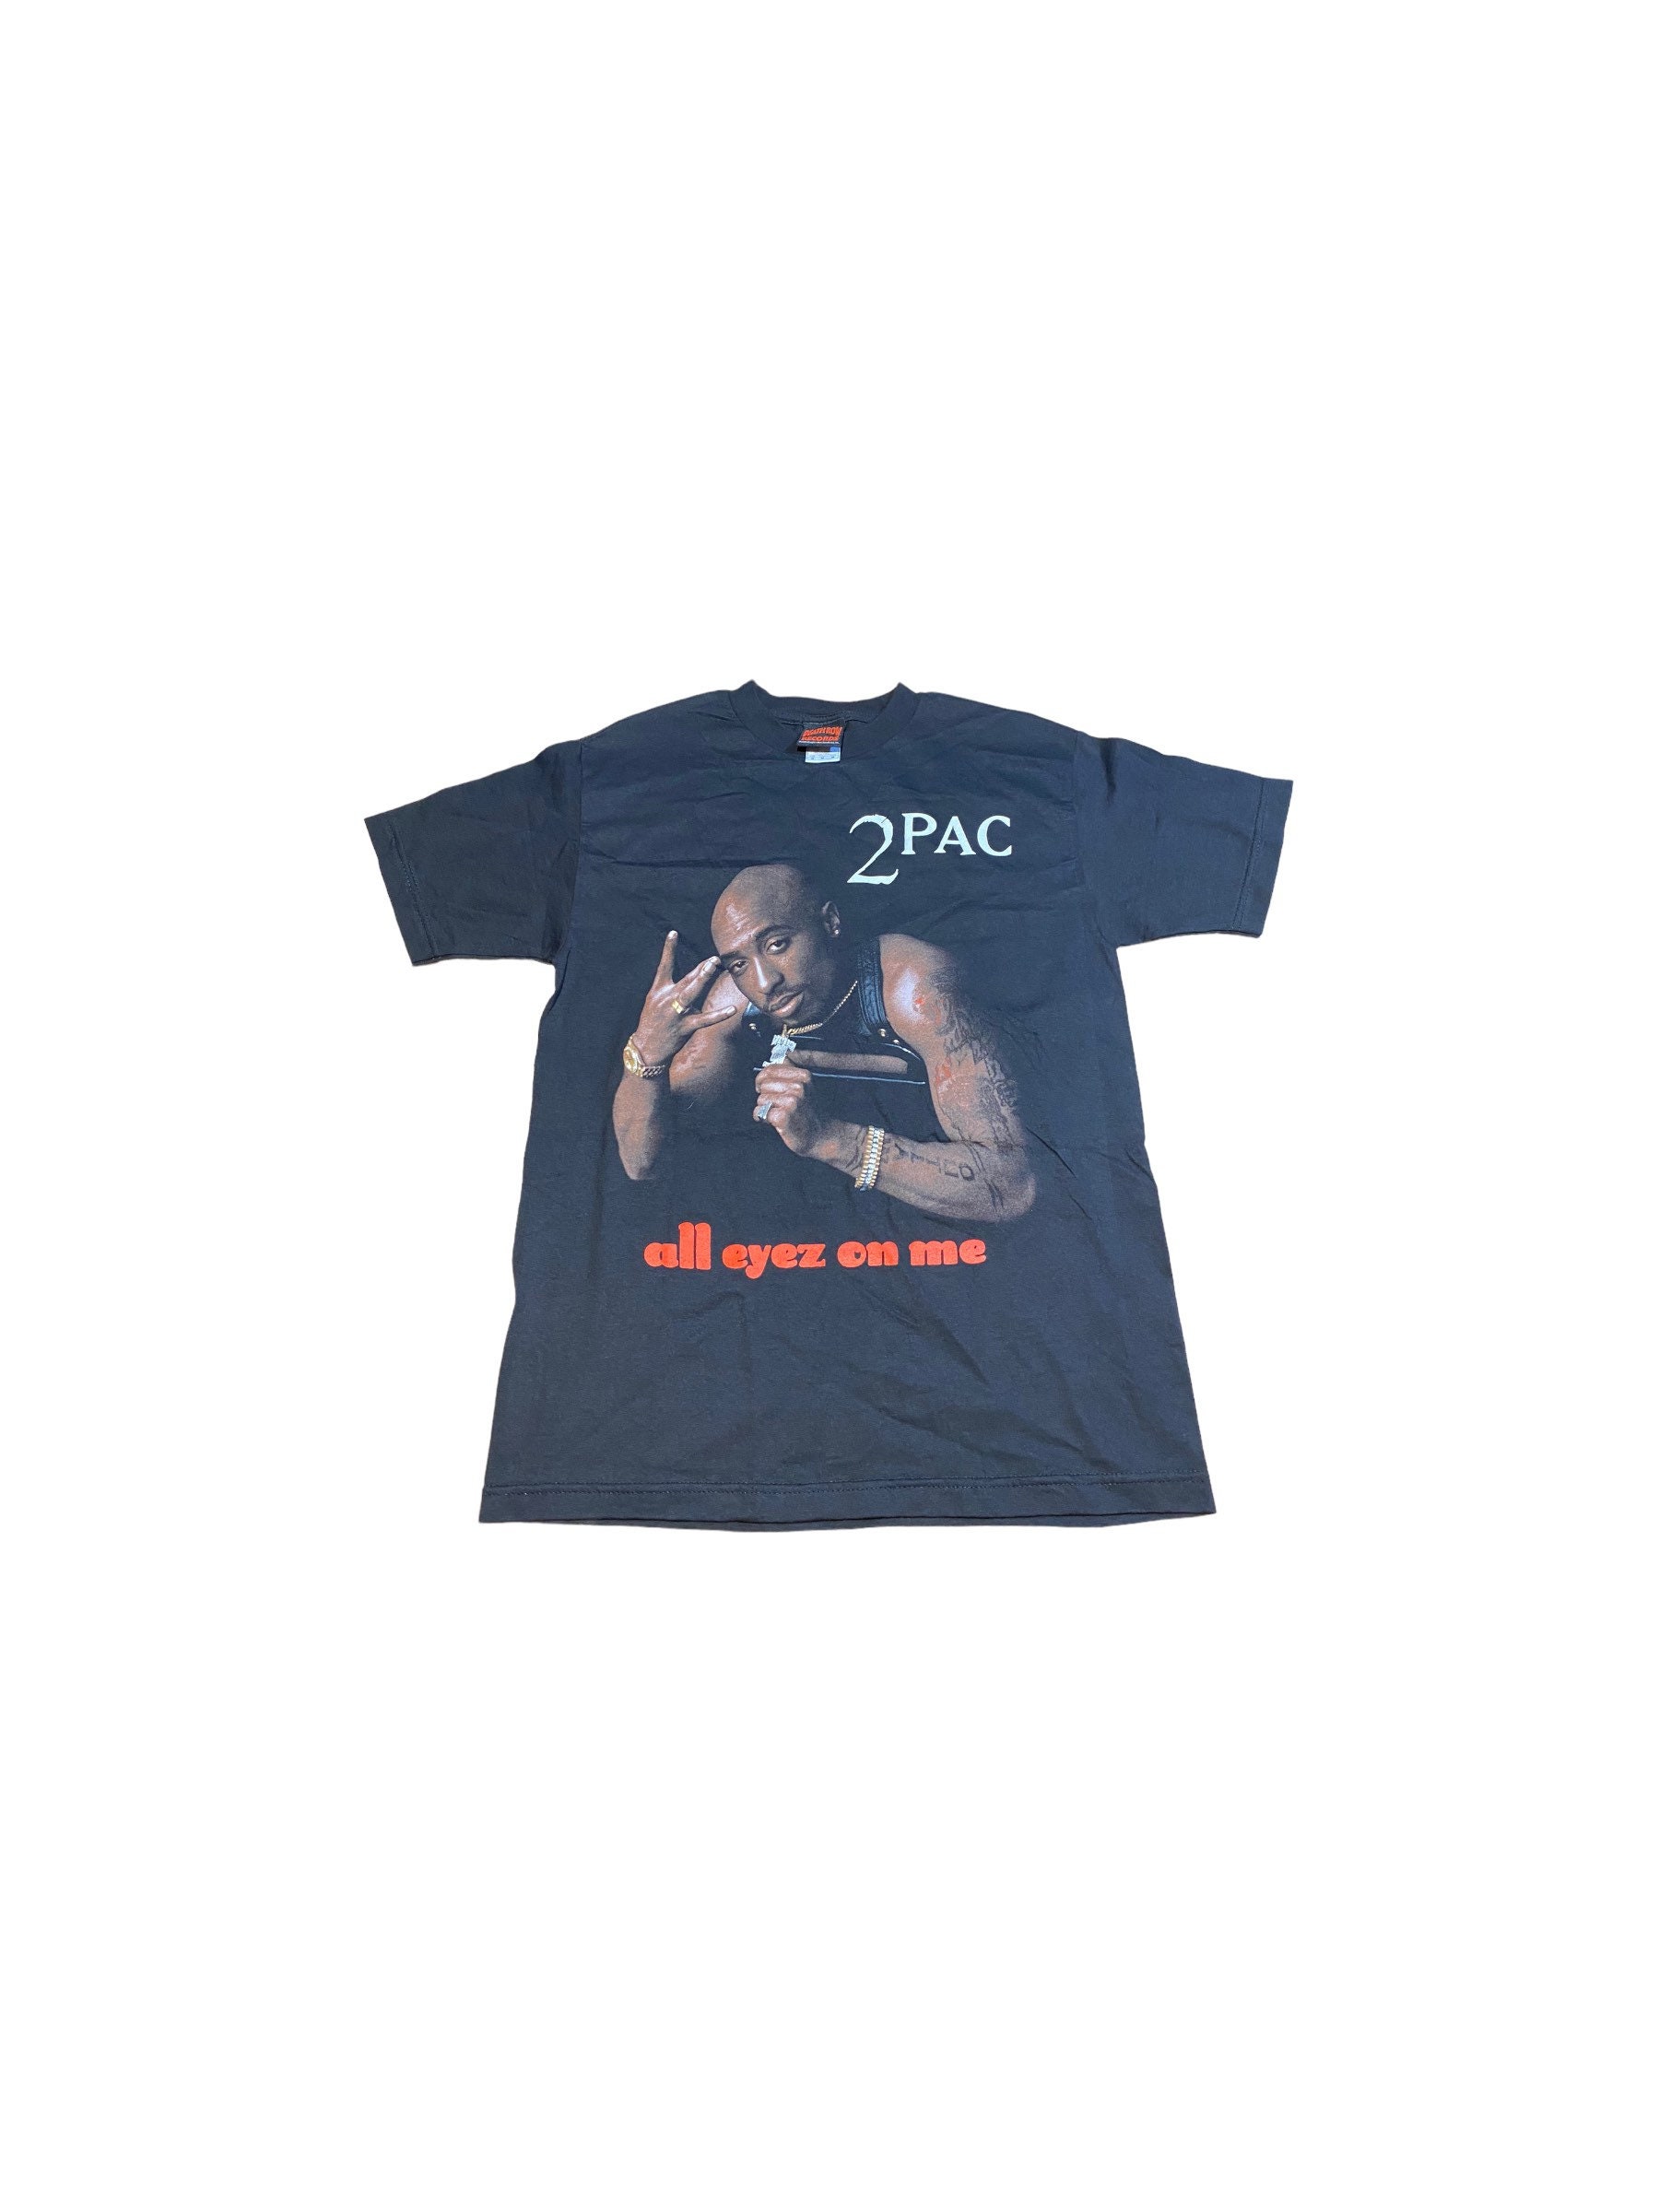 Makaveli - Shirt Etsy Tupac